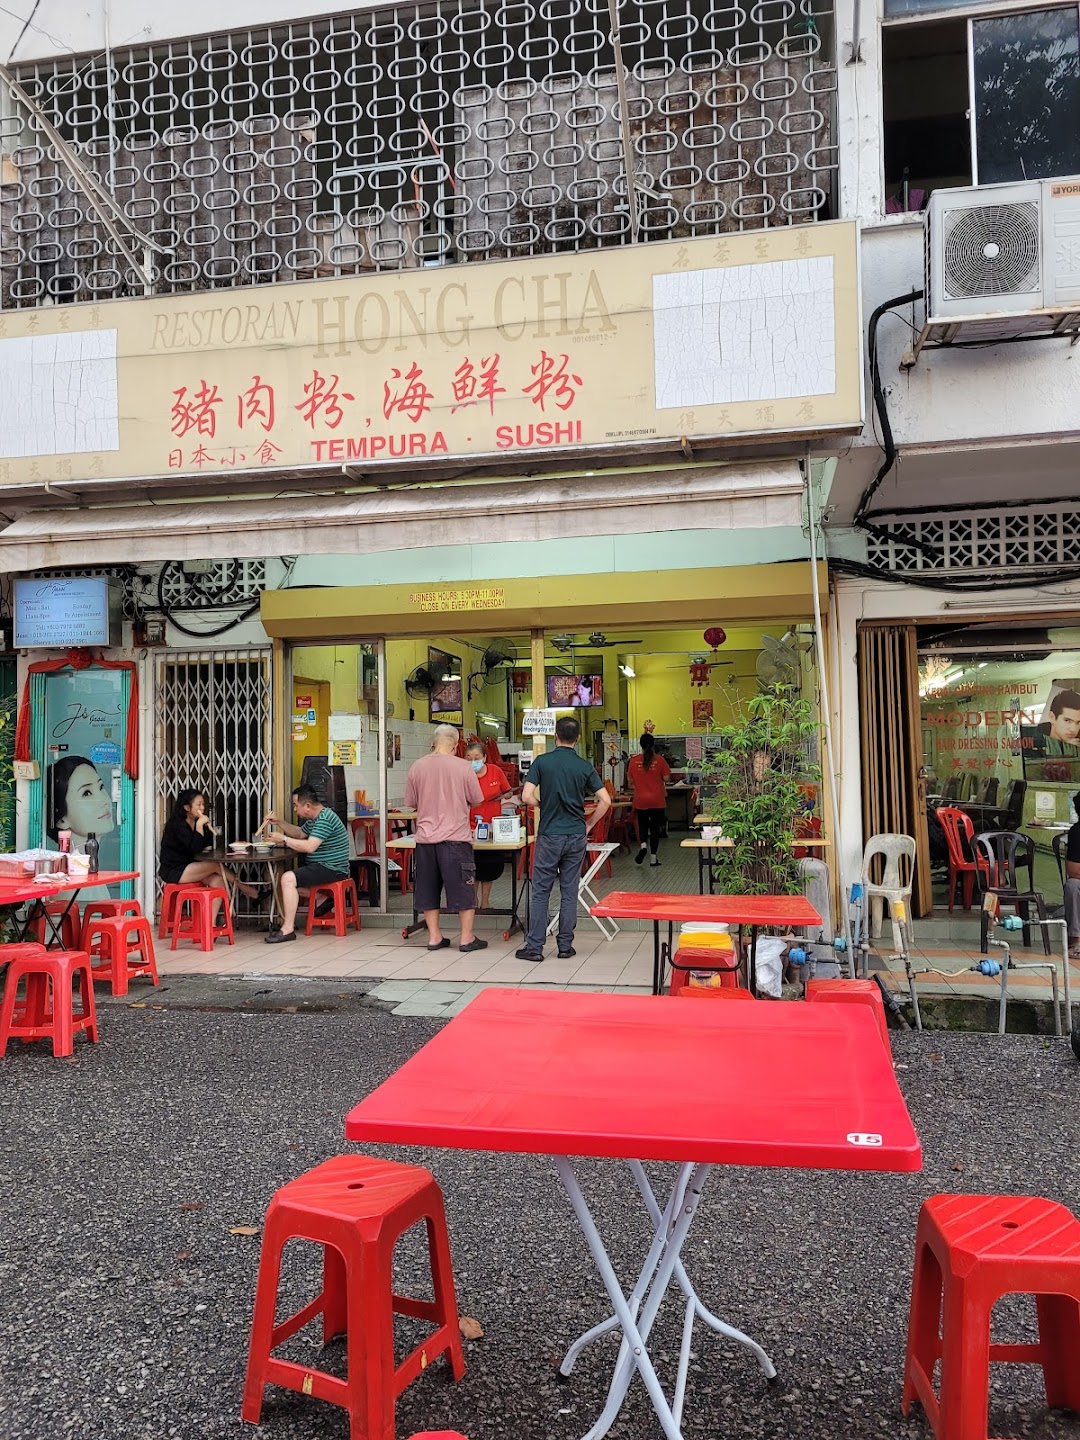 Restoran Hong Cha